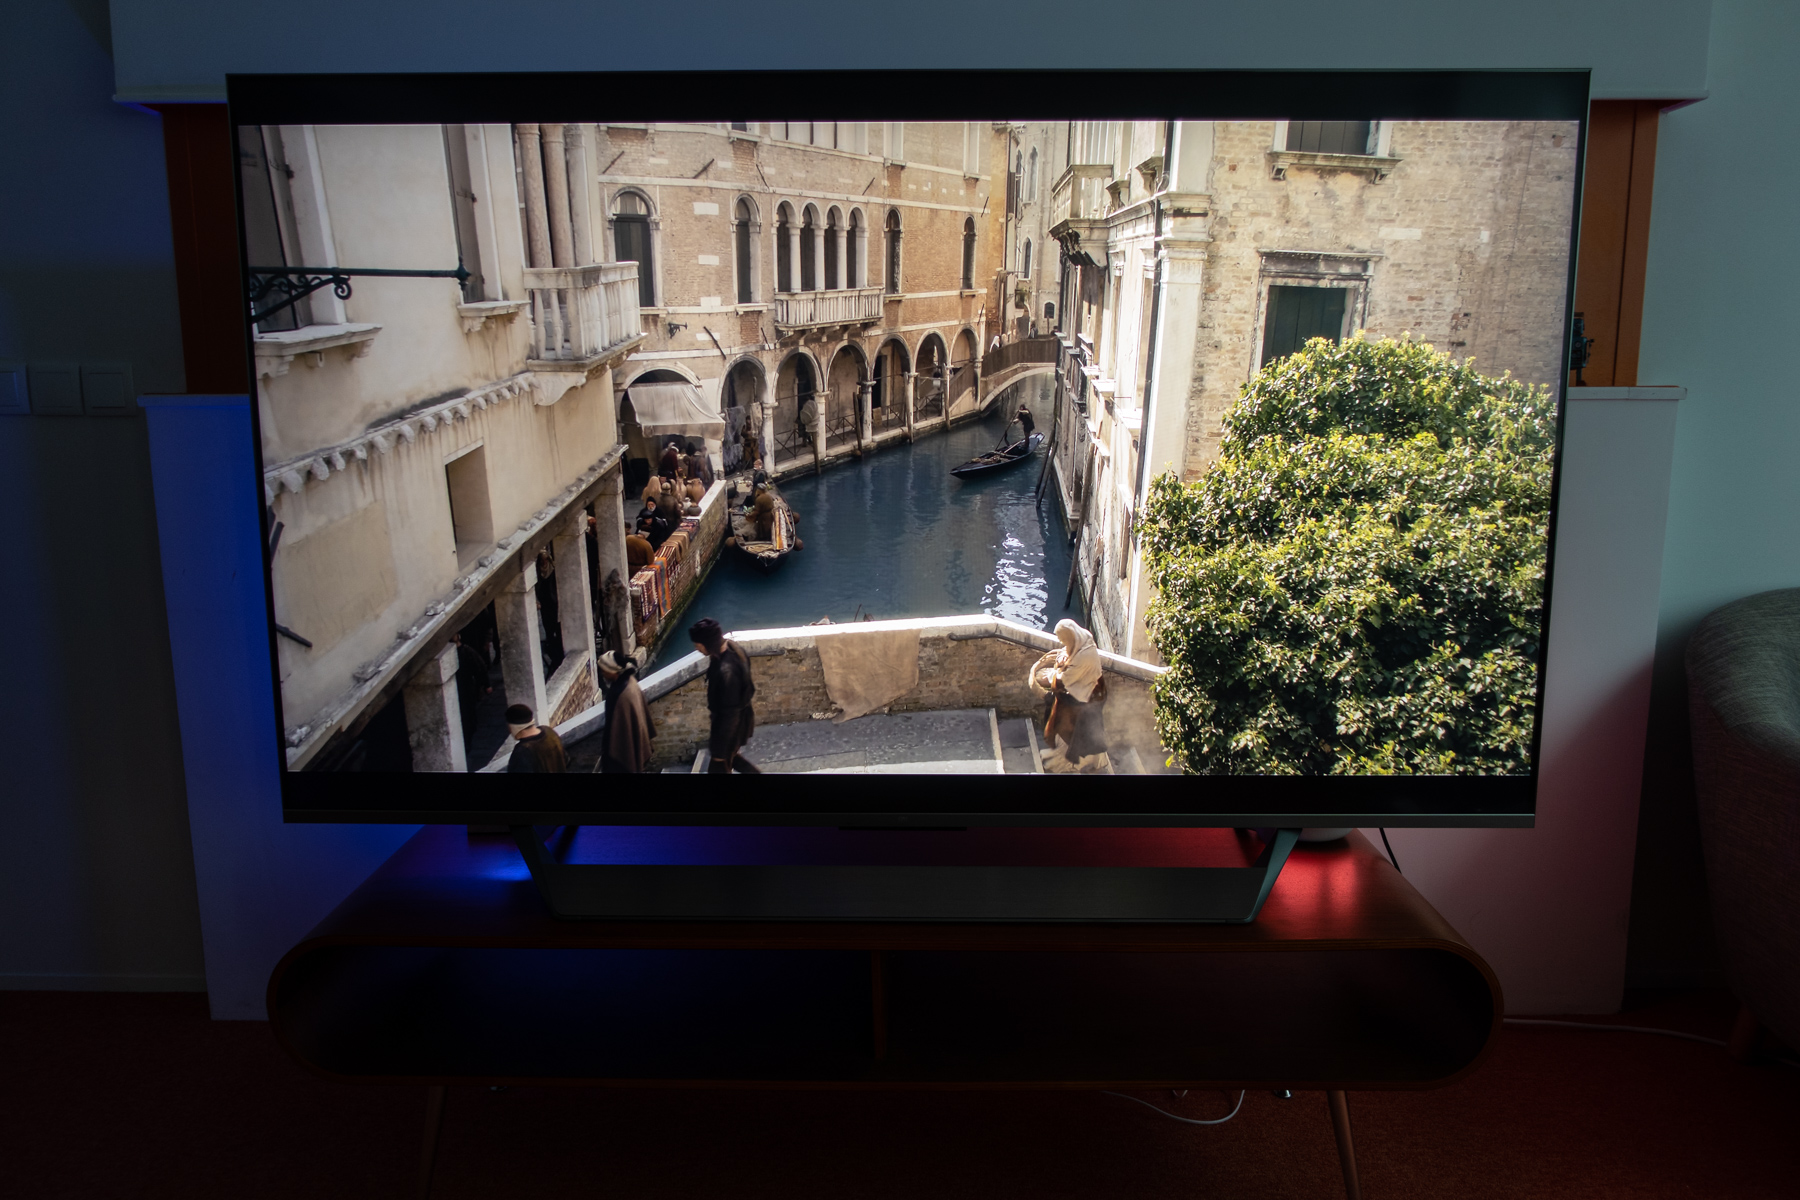 Xiaomi Mi TV Q1 75 : meilleur prix, fiche technique et actualité